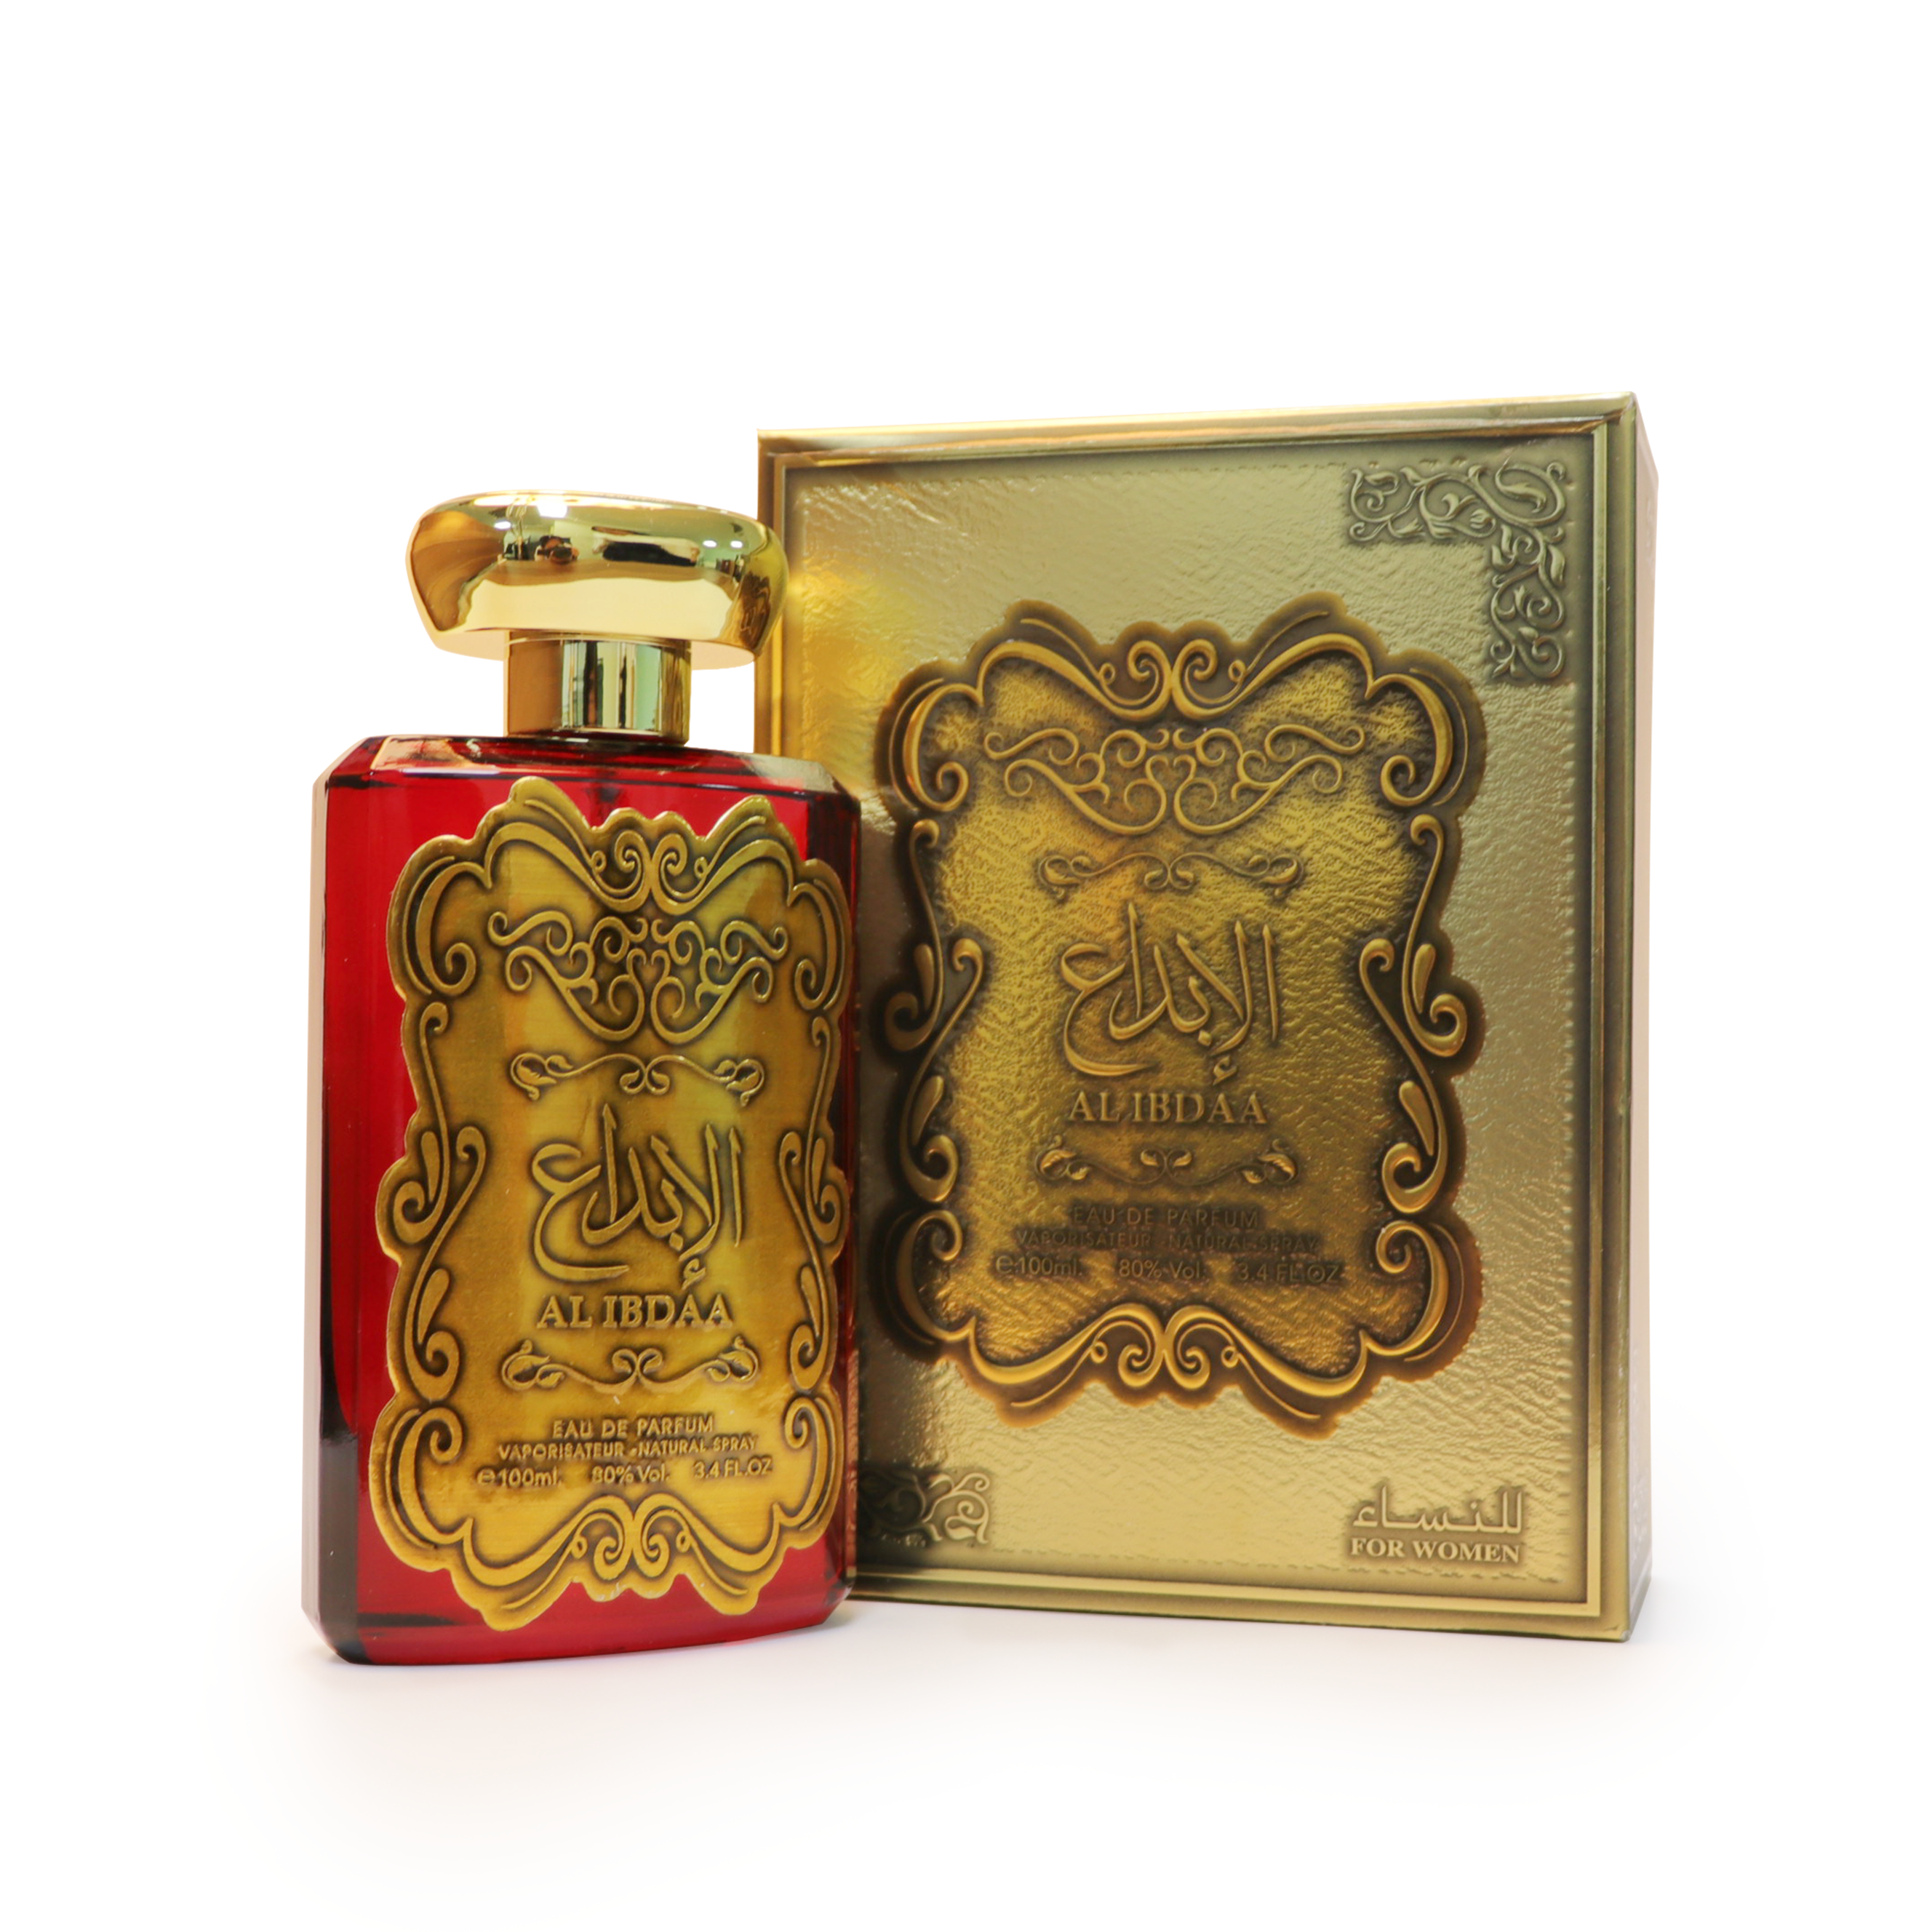 Al Ibdaa Gold - Eau De Parfum - 100ml by Ard Al Zaafaran for Women - image 1 of 3